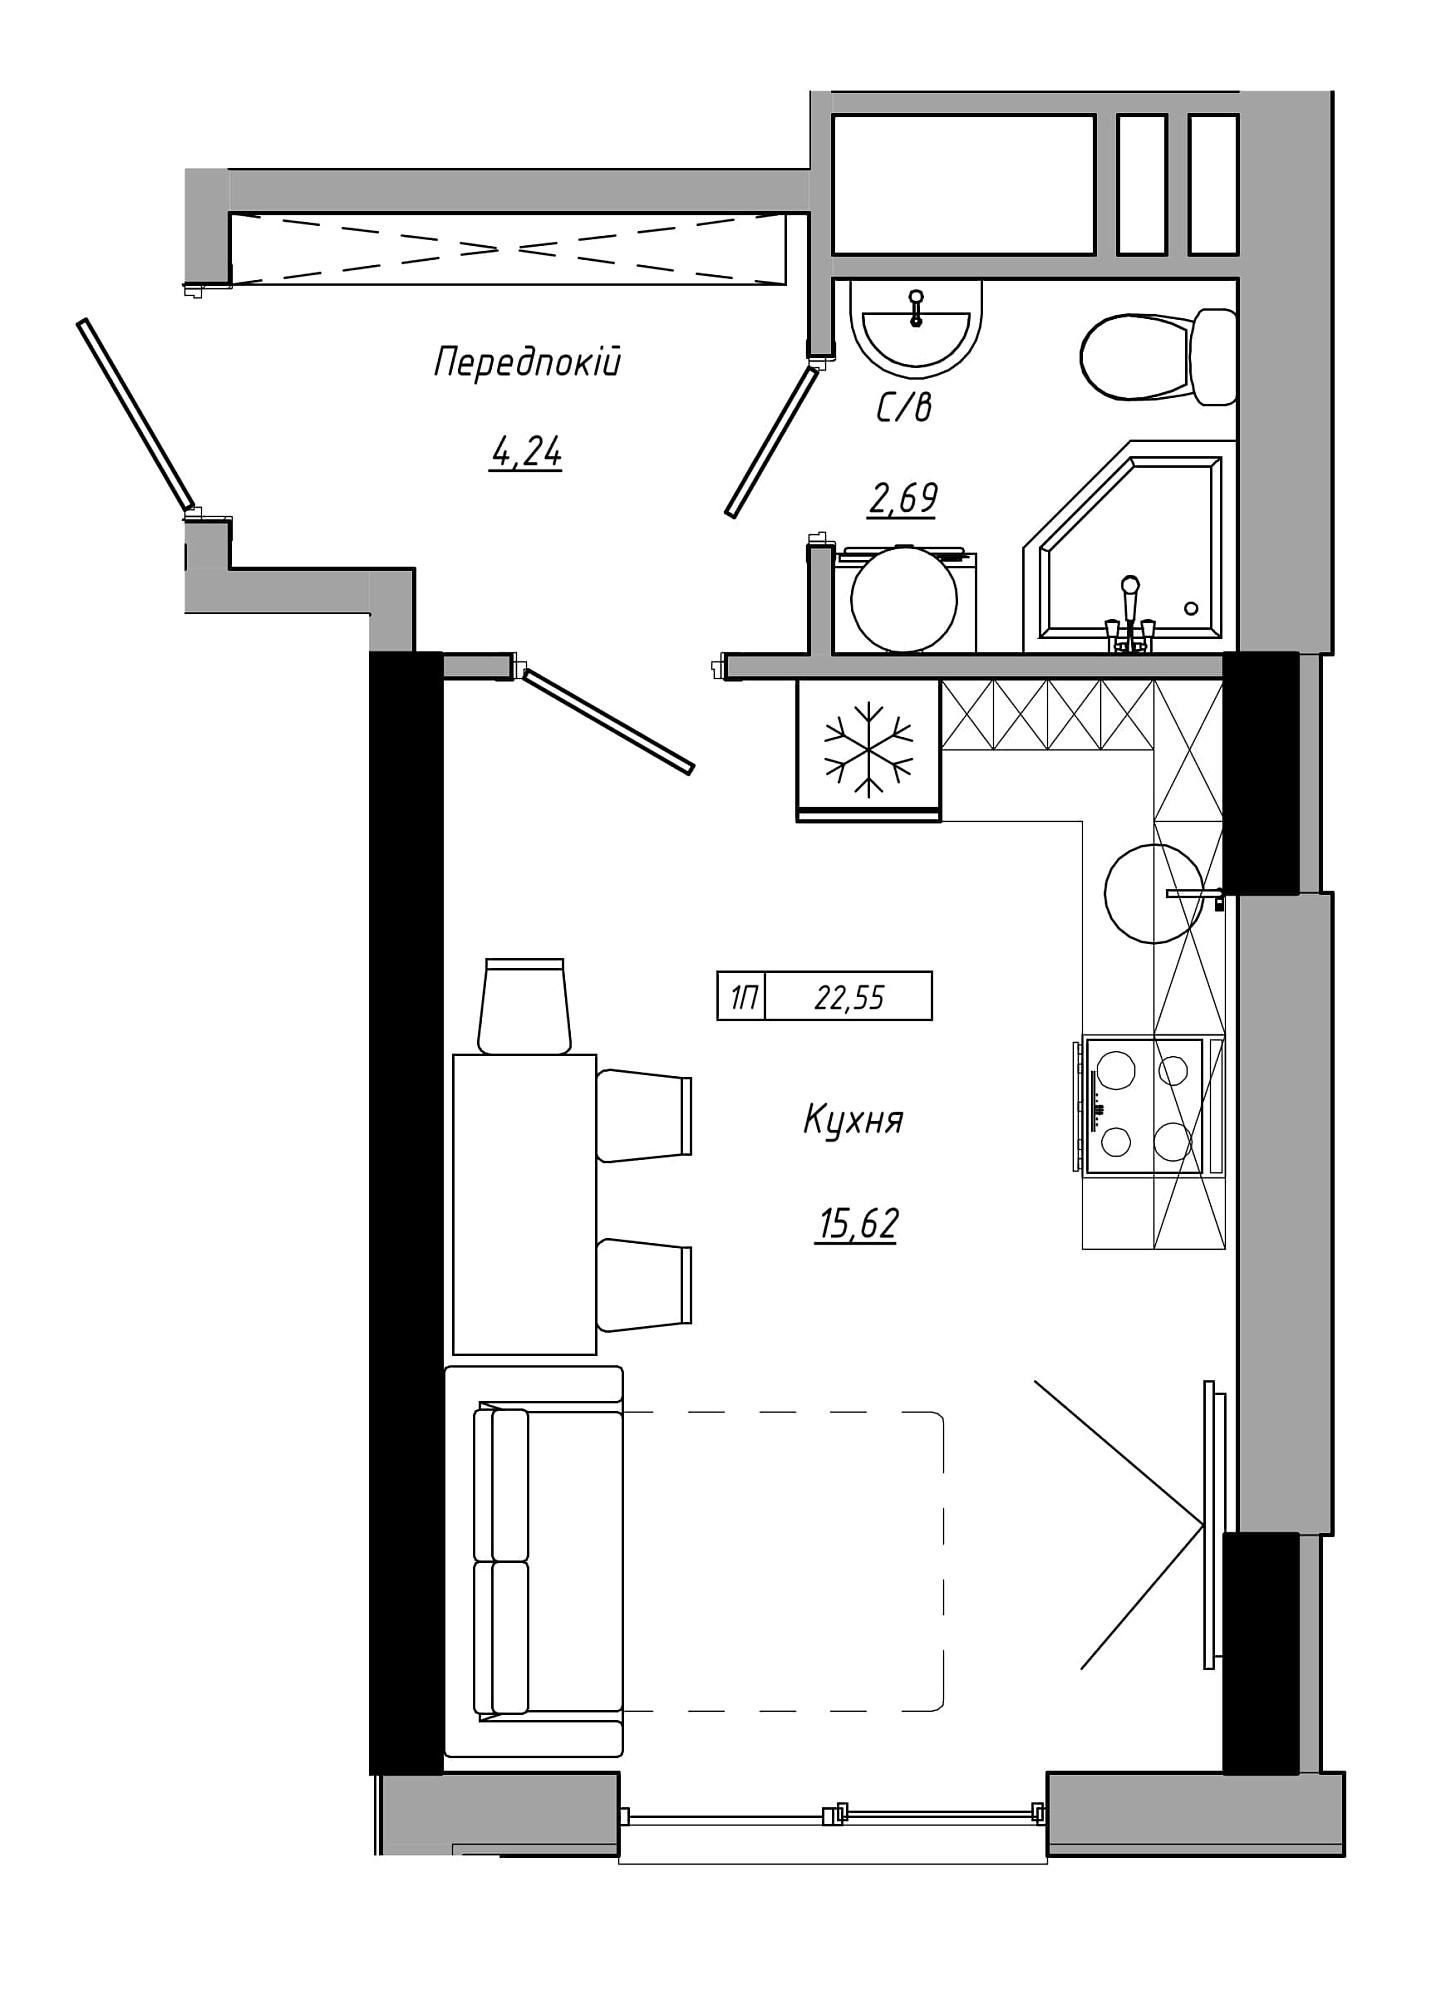 Планування Smart-квартира площею 22.55м2, AB-21-07/00018.